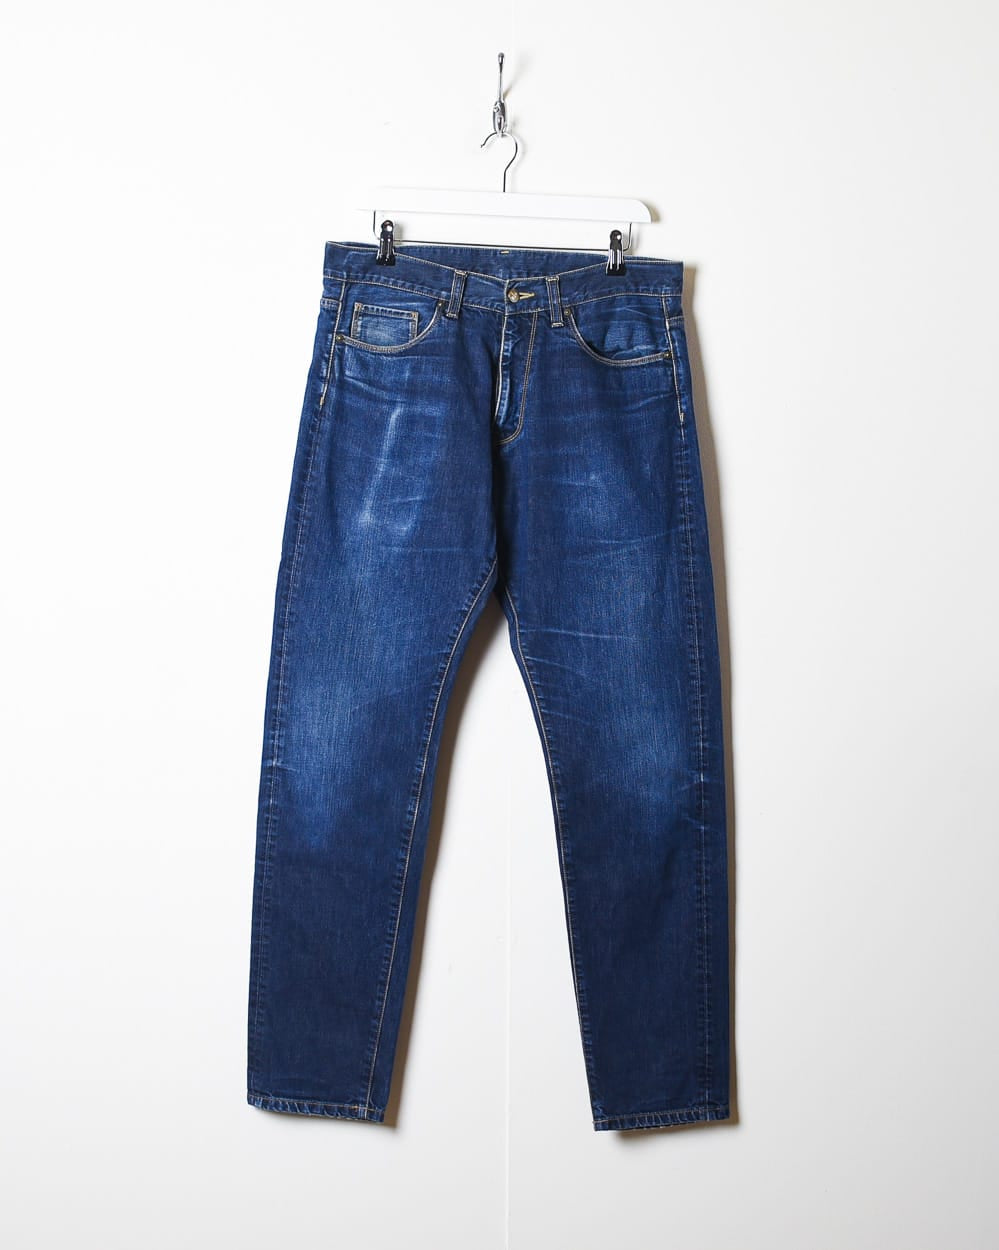 Navy Carhartt Jeans - W34 L31